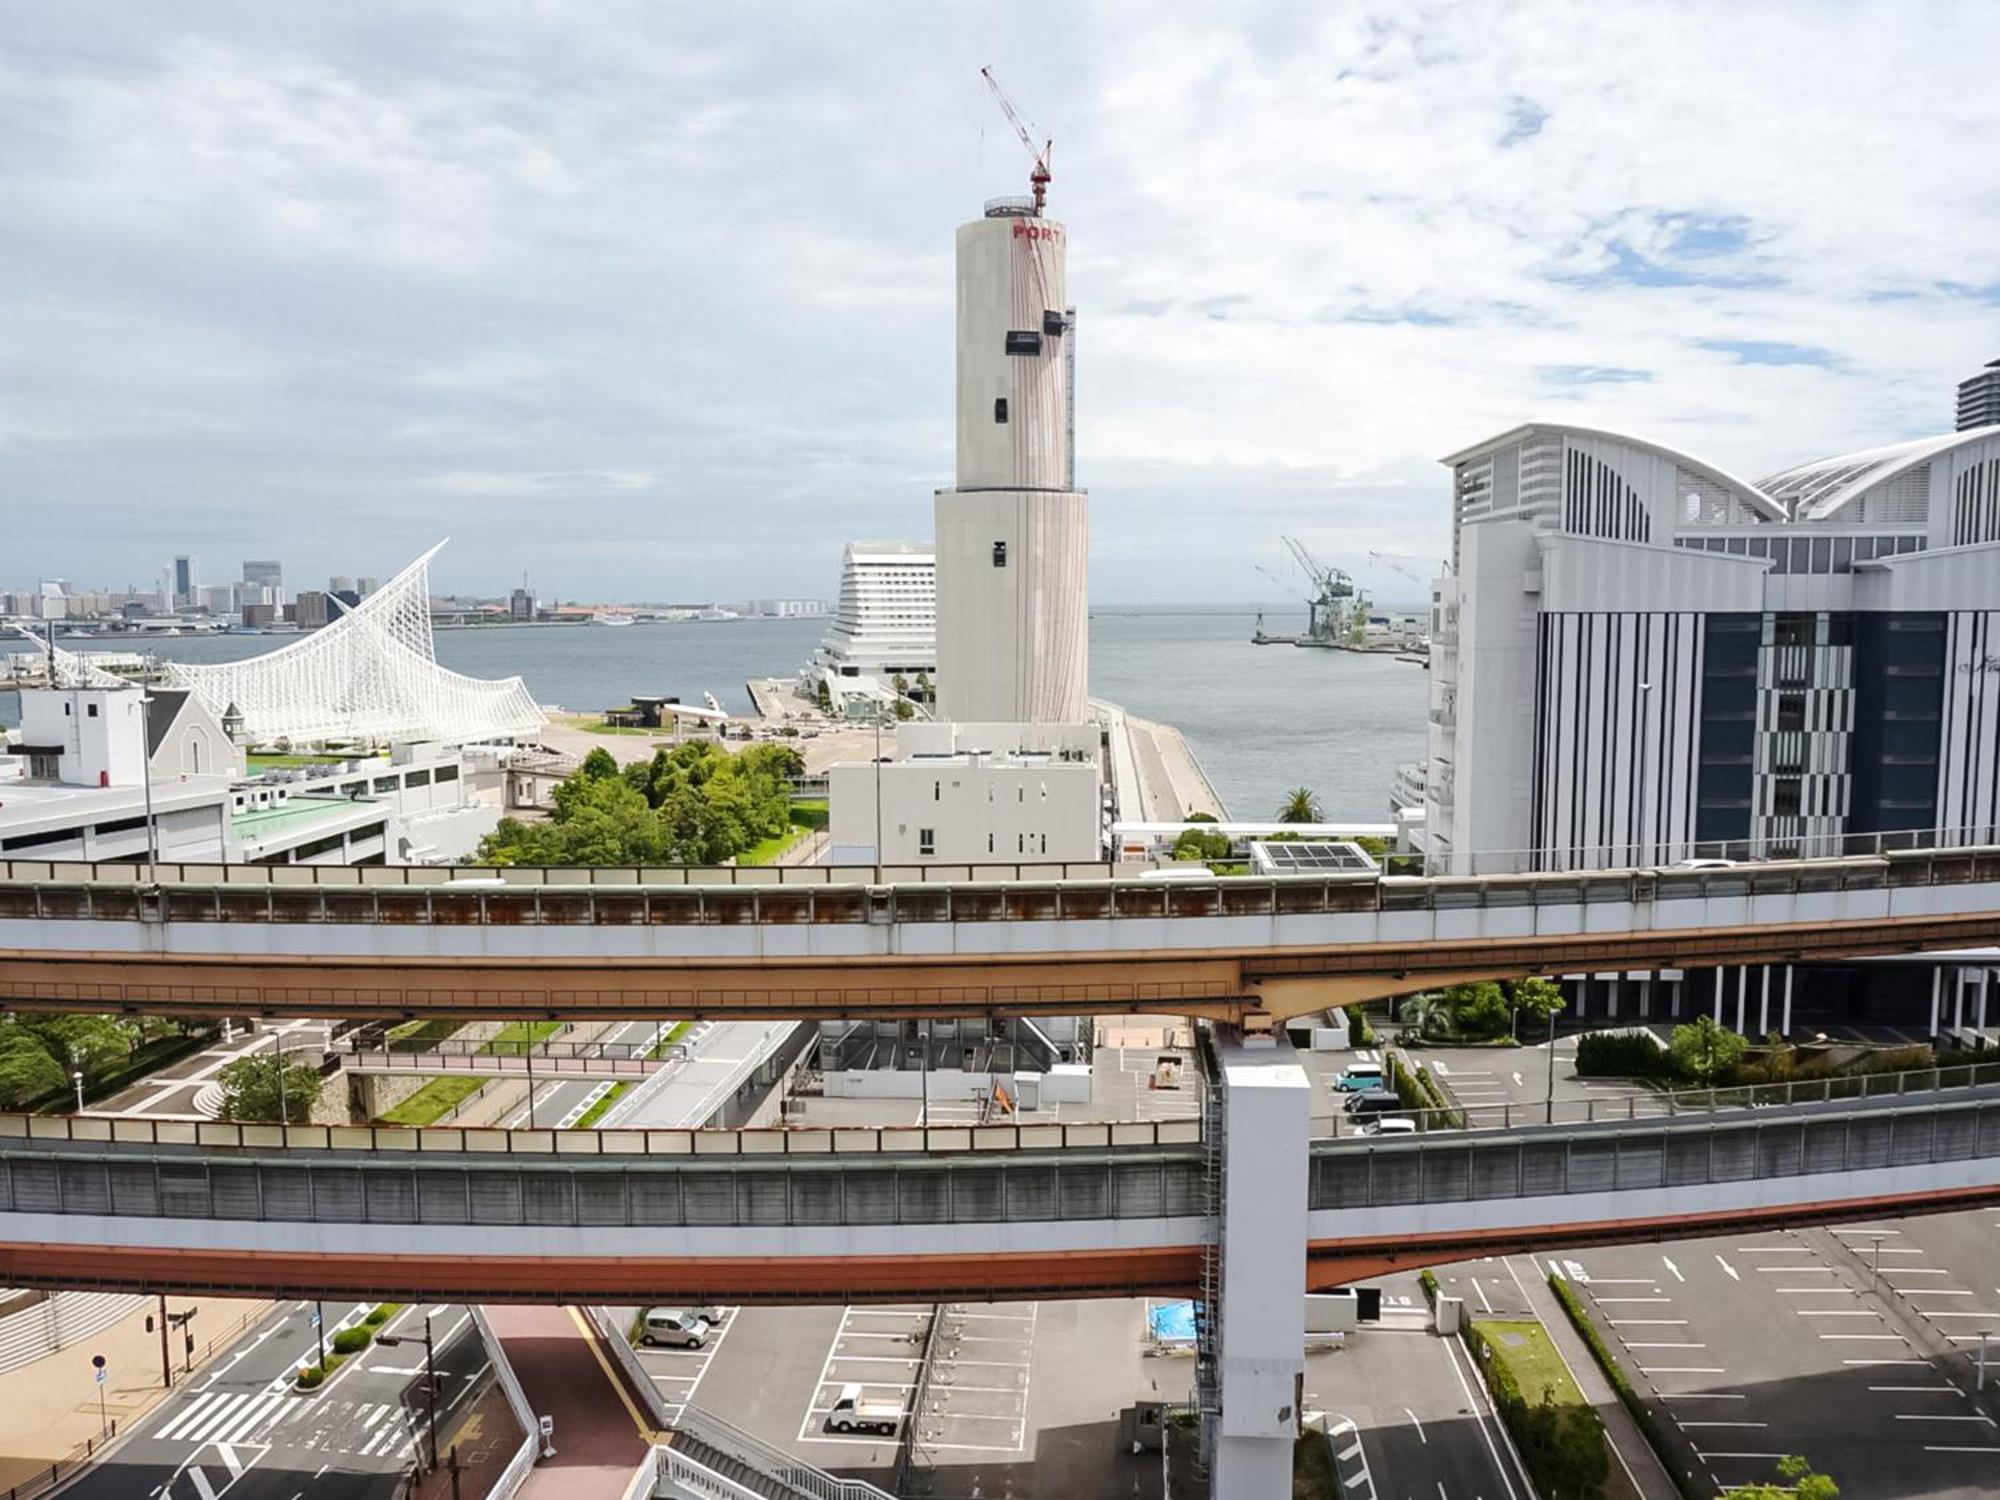 Kobe Port Tower Hotel Экстерьер фото